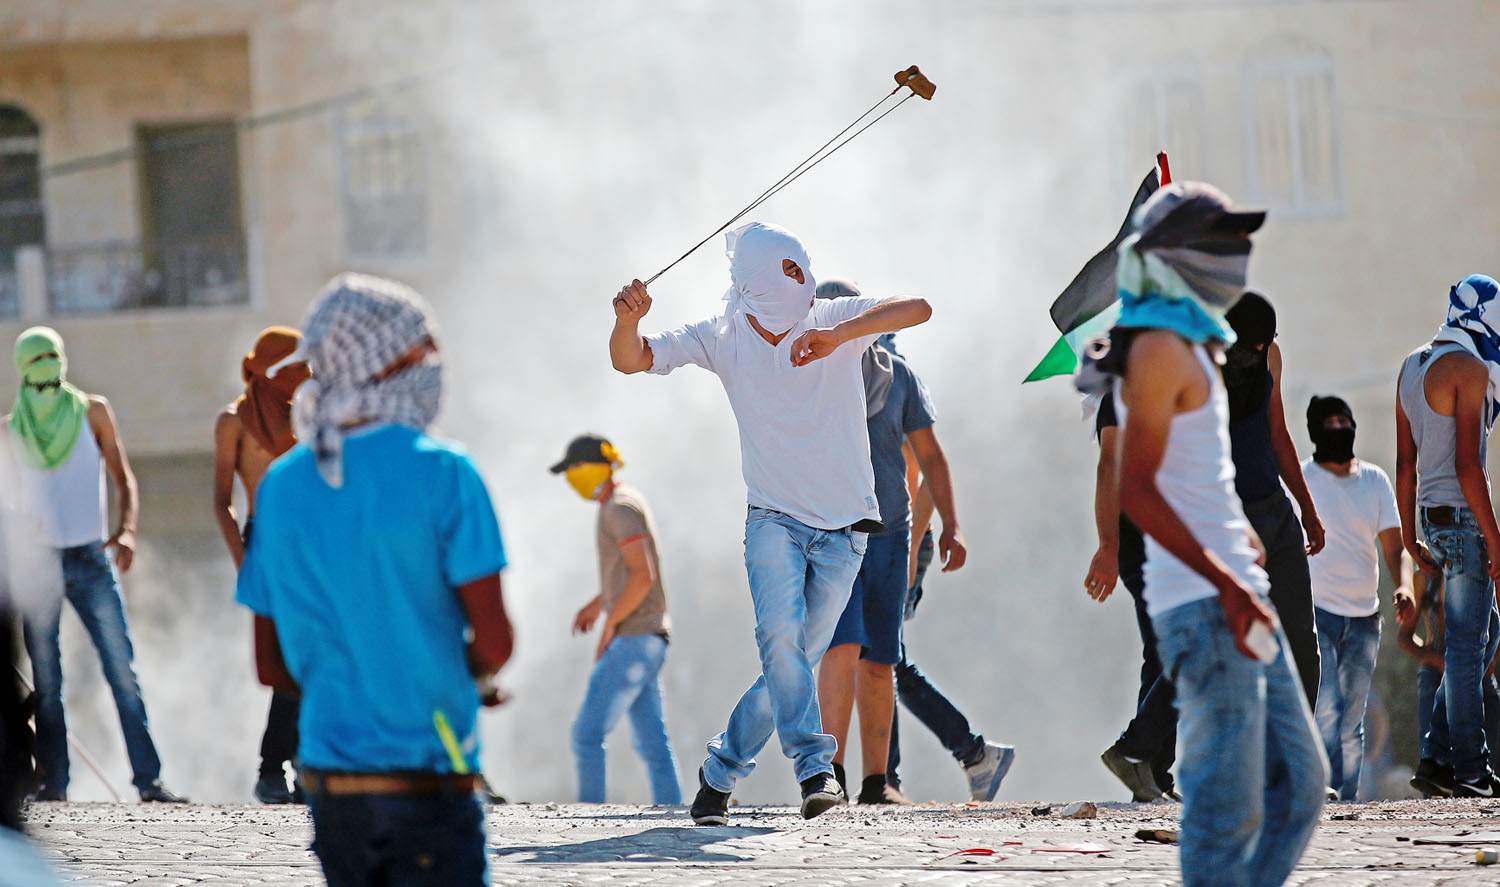 Palesztin tüntető parittyával támad az izraeli rendőrökre. Kiszolgáltatottak és elkeseredettek